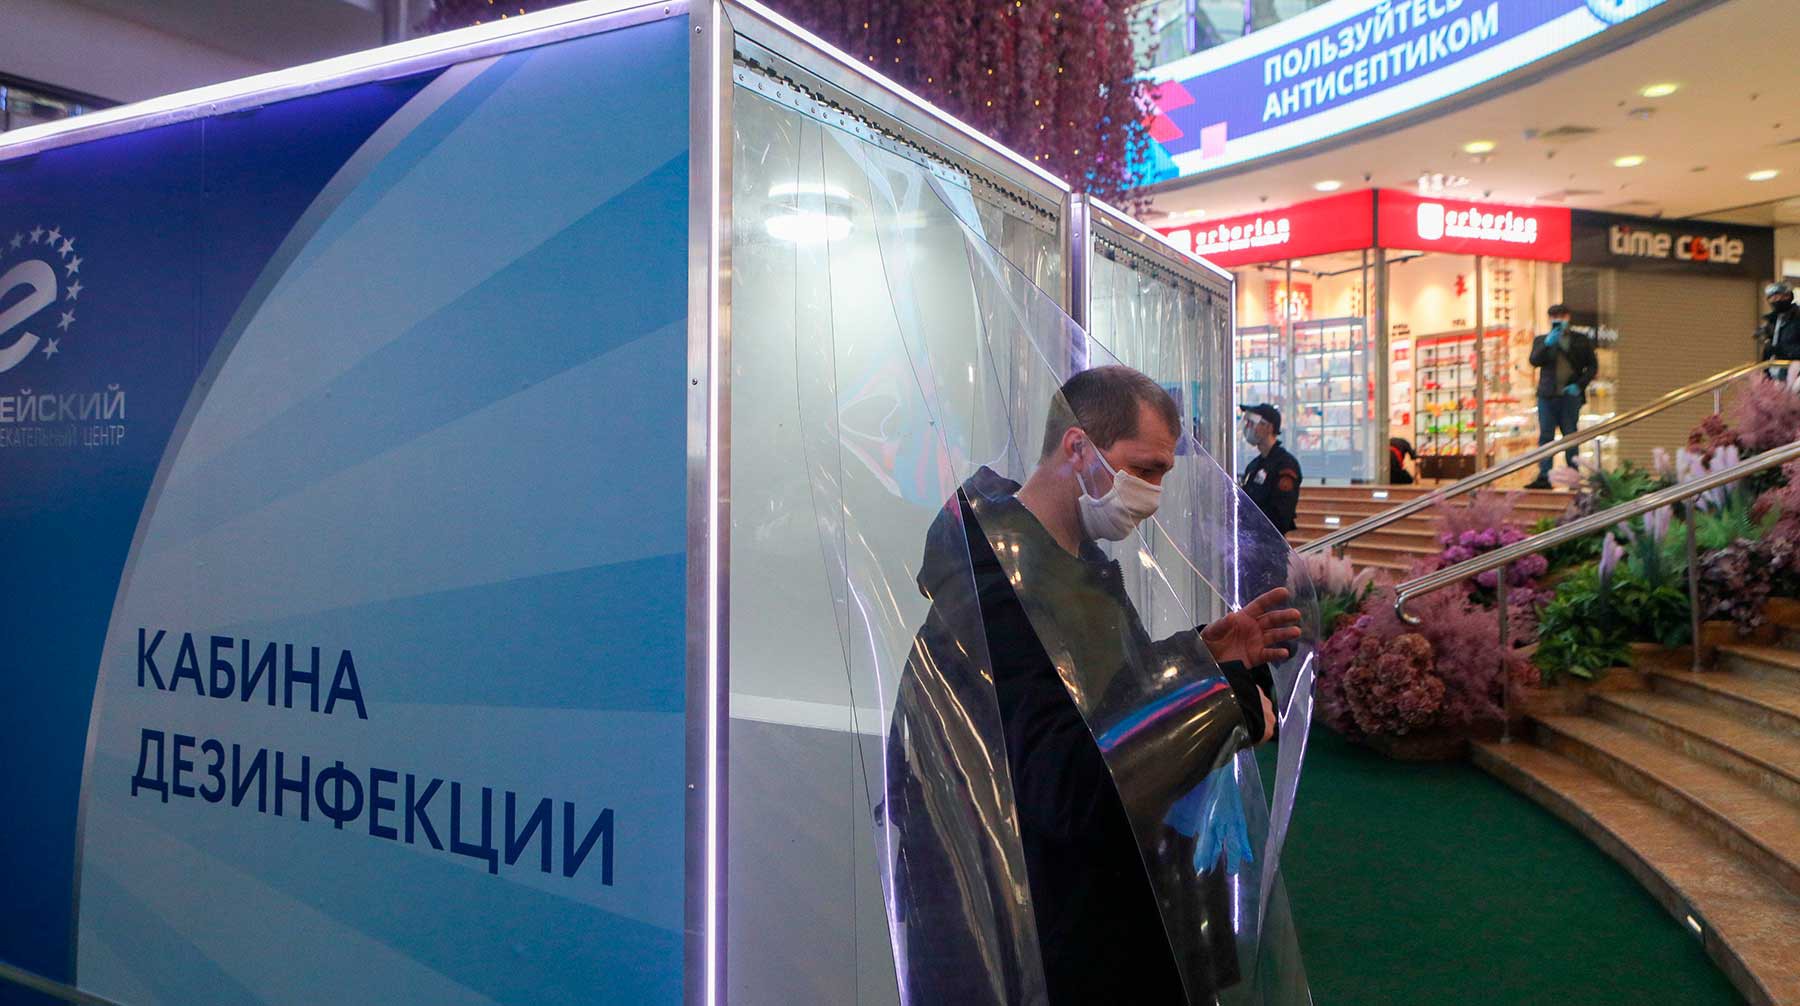 Dailystorm - Магазины Москвы оштрафуют на 300 миллионов рублей за нарушение масочного режима